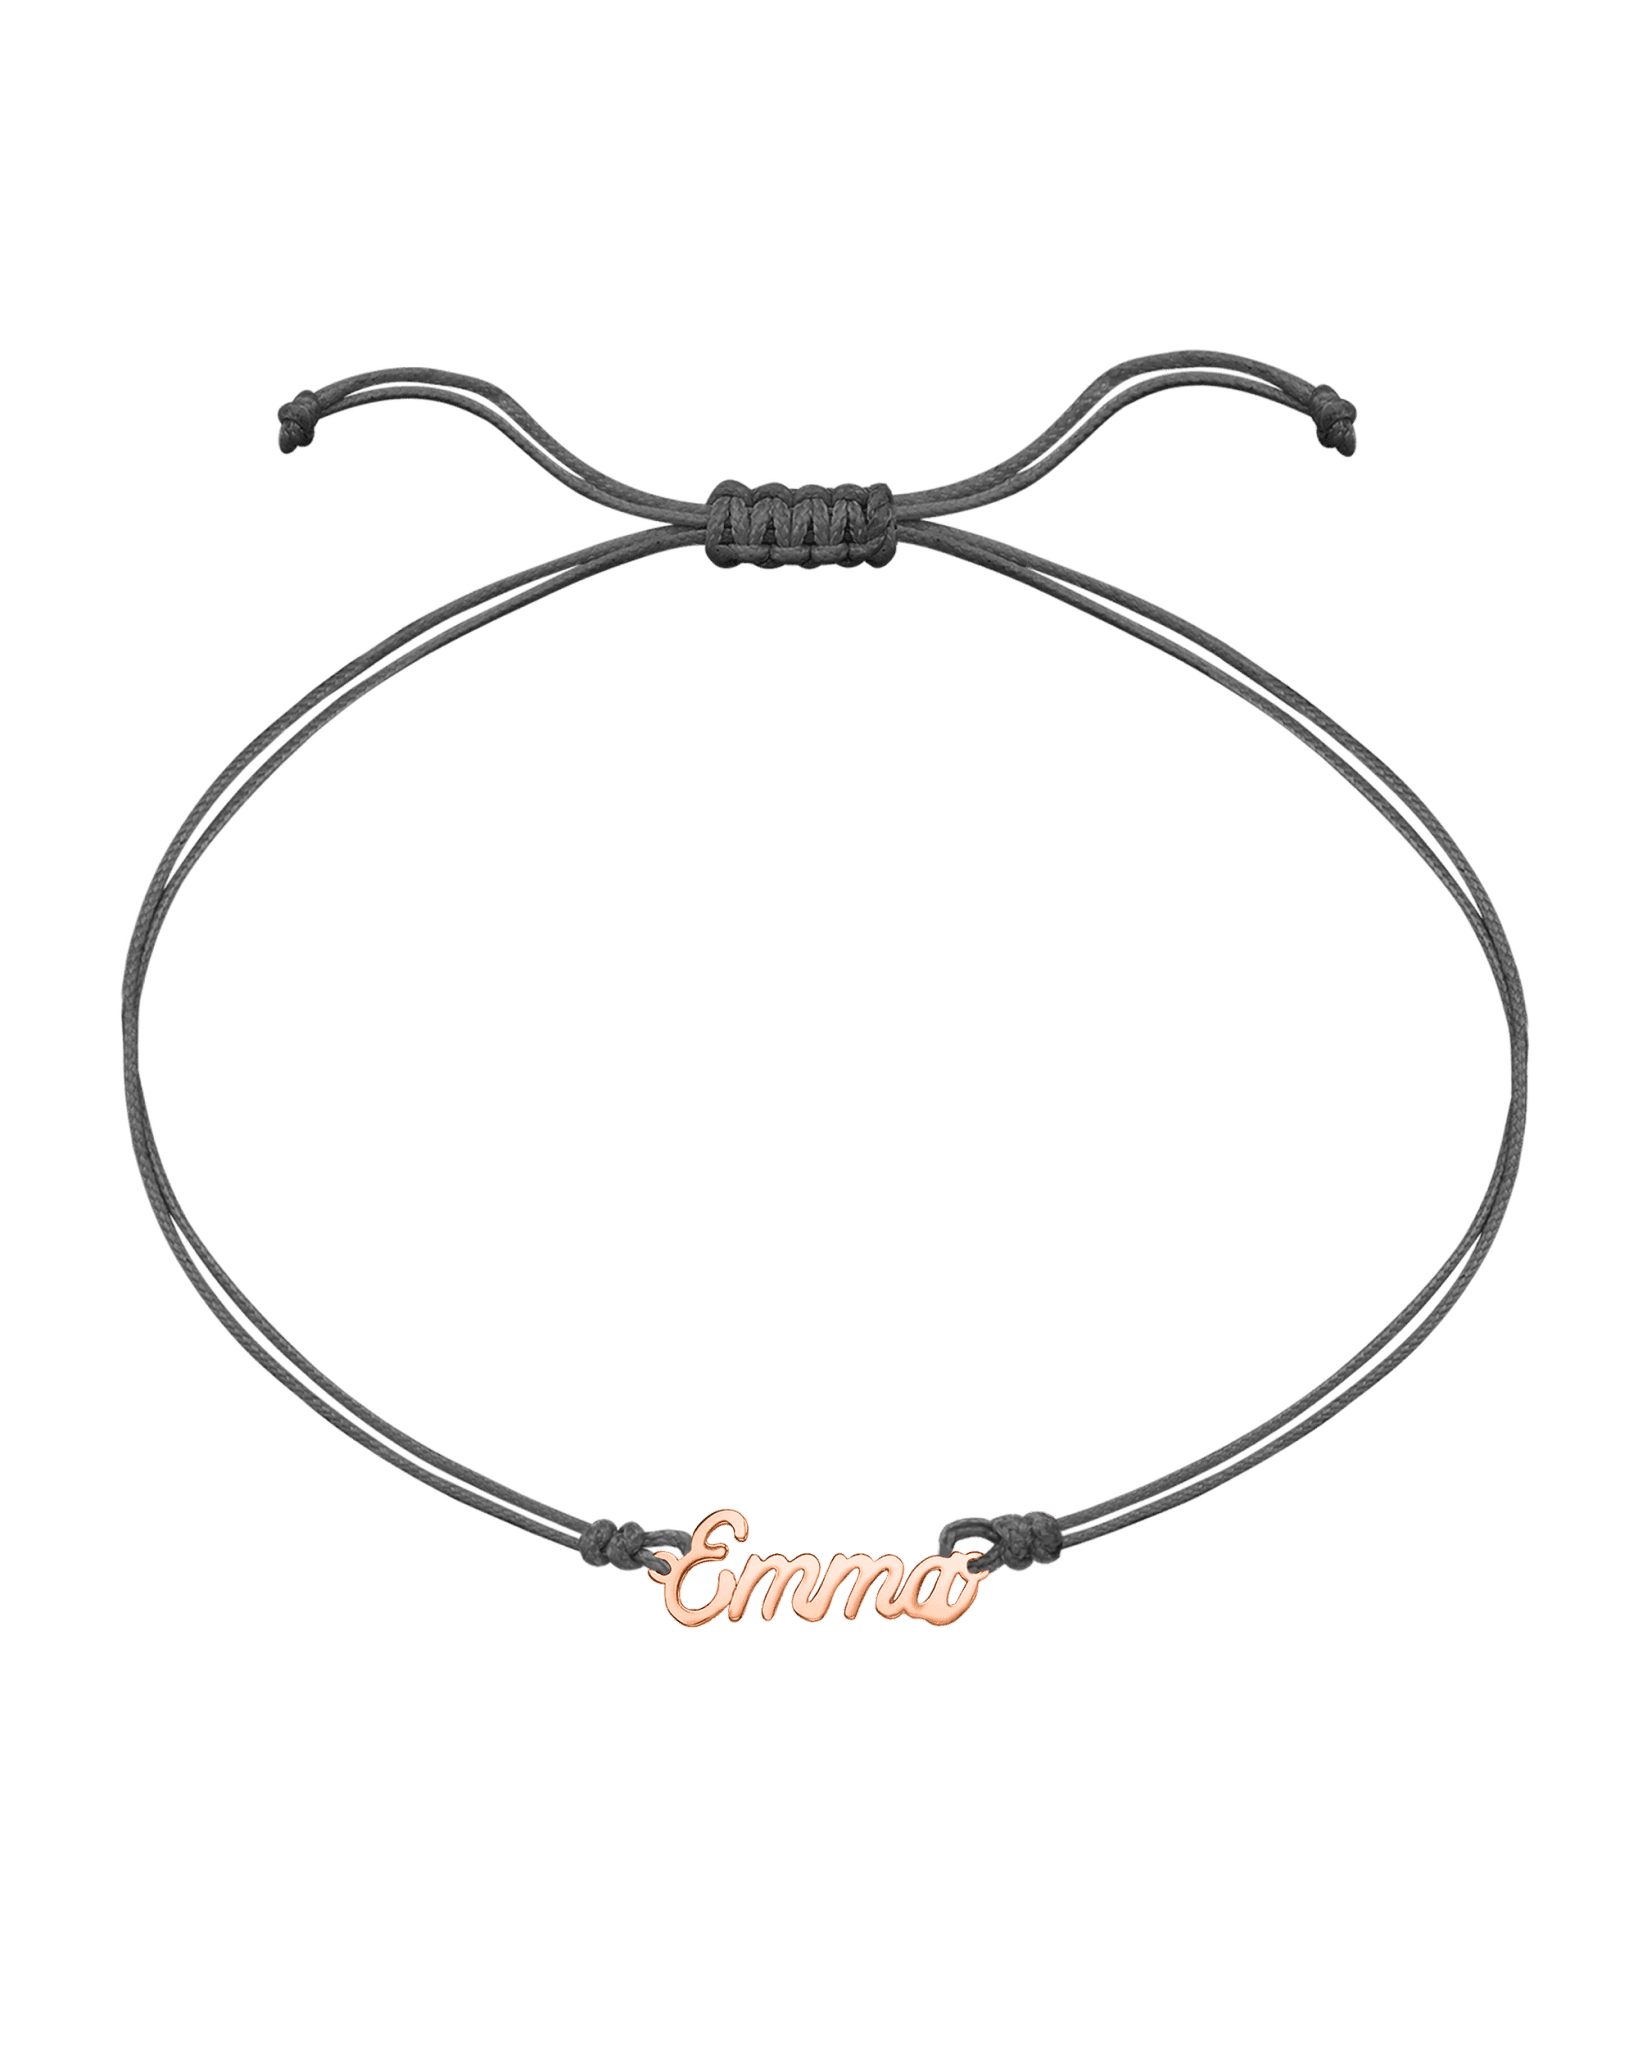 Name Plate String of Love - 14K Rose Gold Bracelets 14K Solid Gold Grey 1 